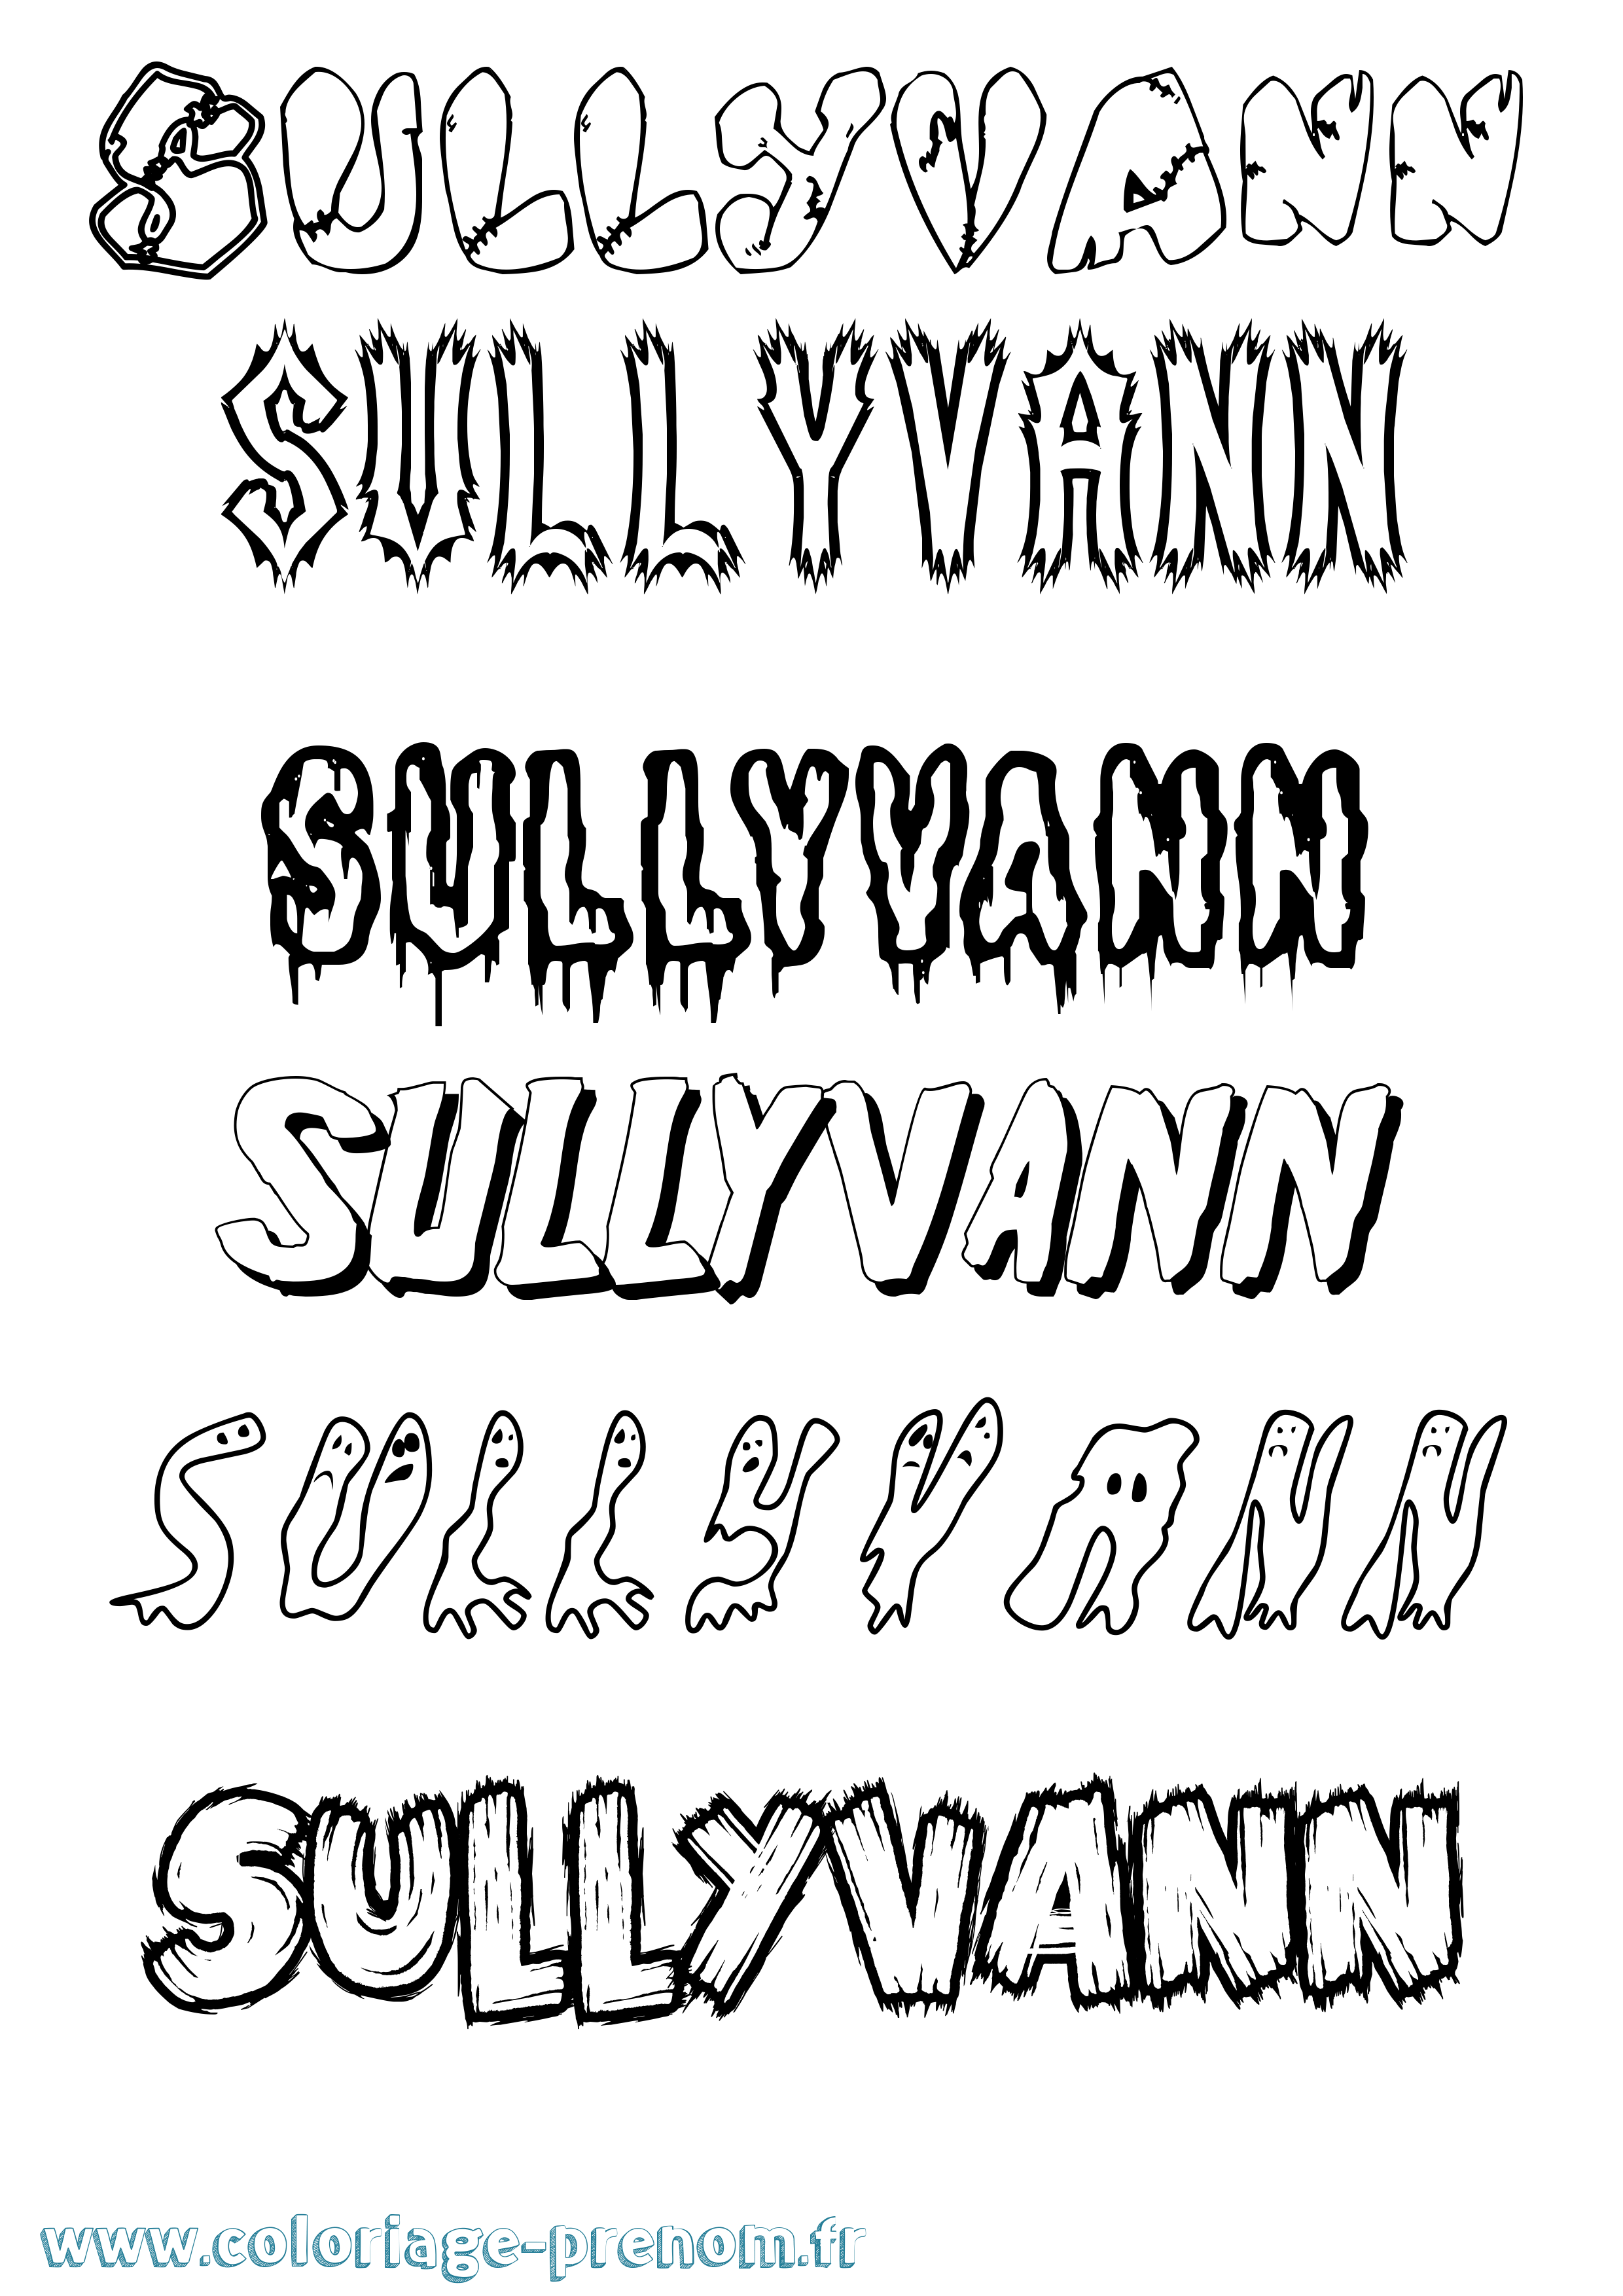 Coloriage prénom Sullyvann Frisson